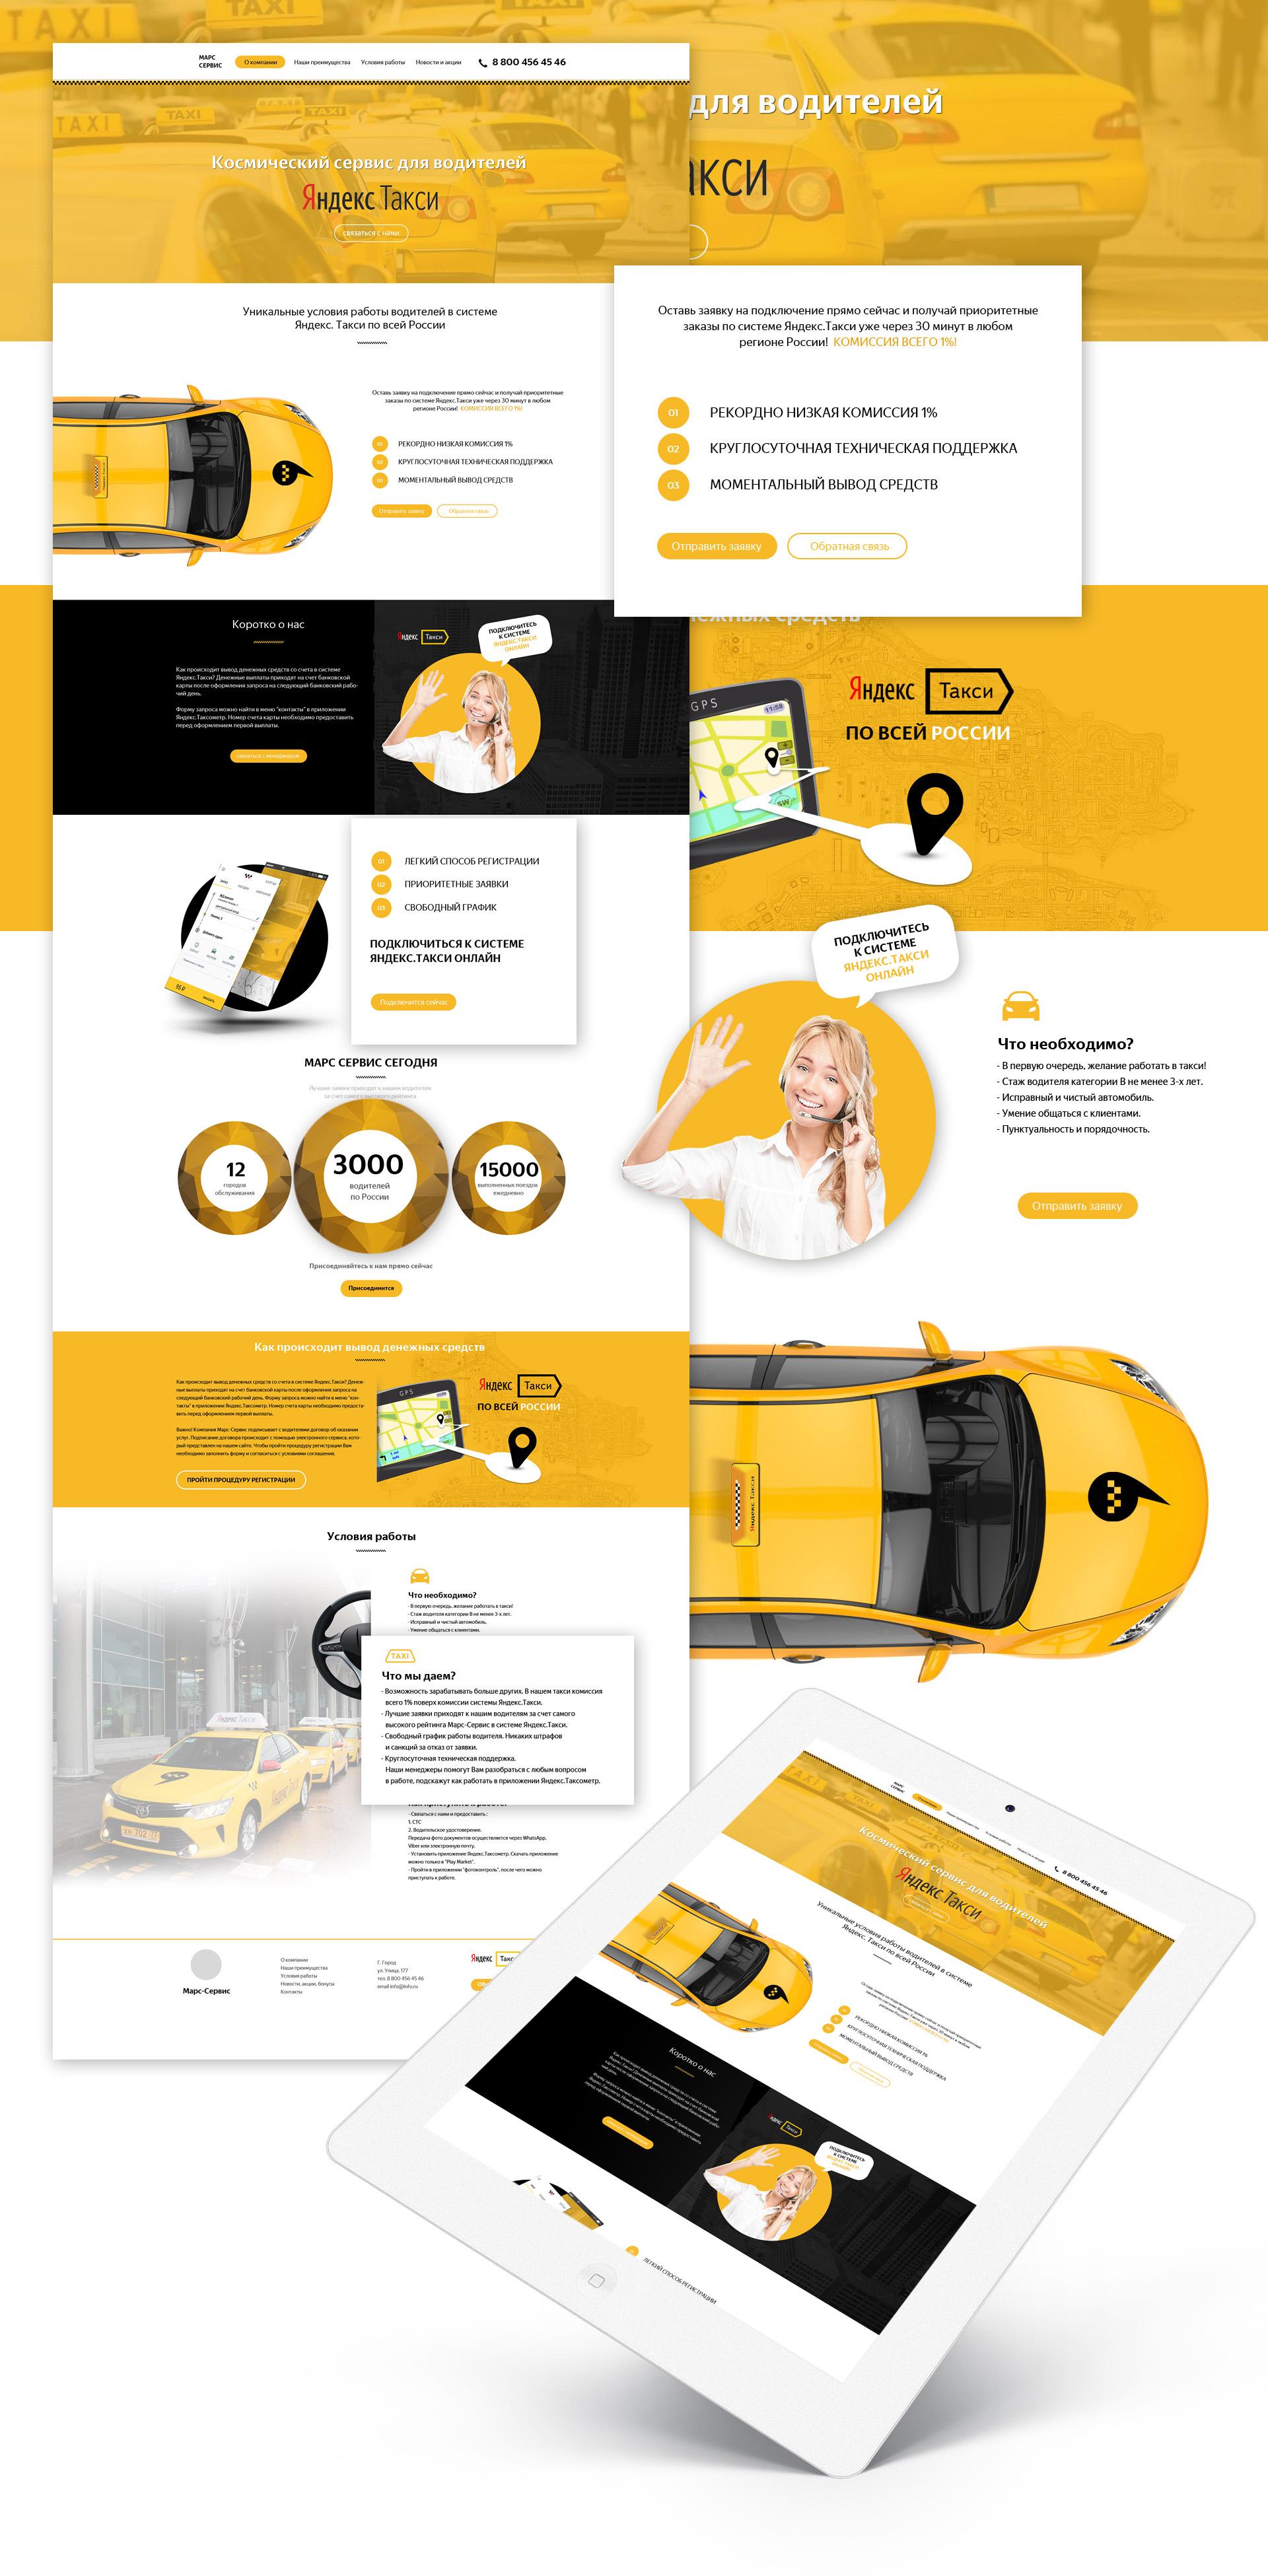 Дизайн сайта такси, разработка готового сайта для таксопарка, лендинг пейдж